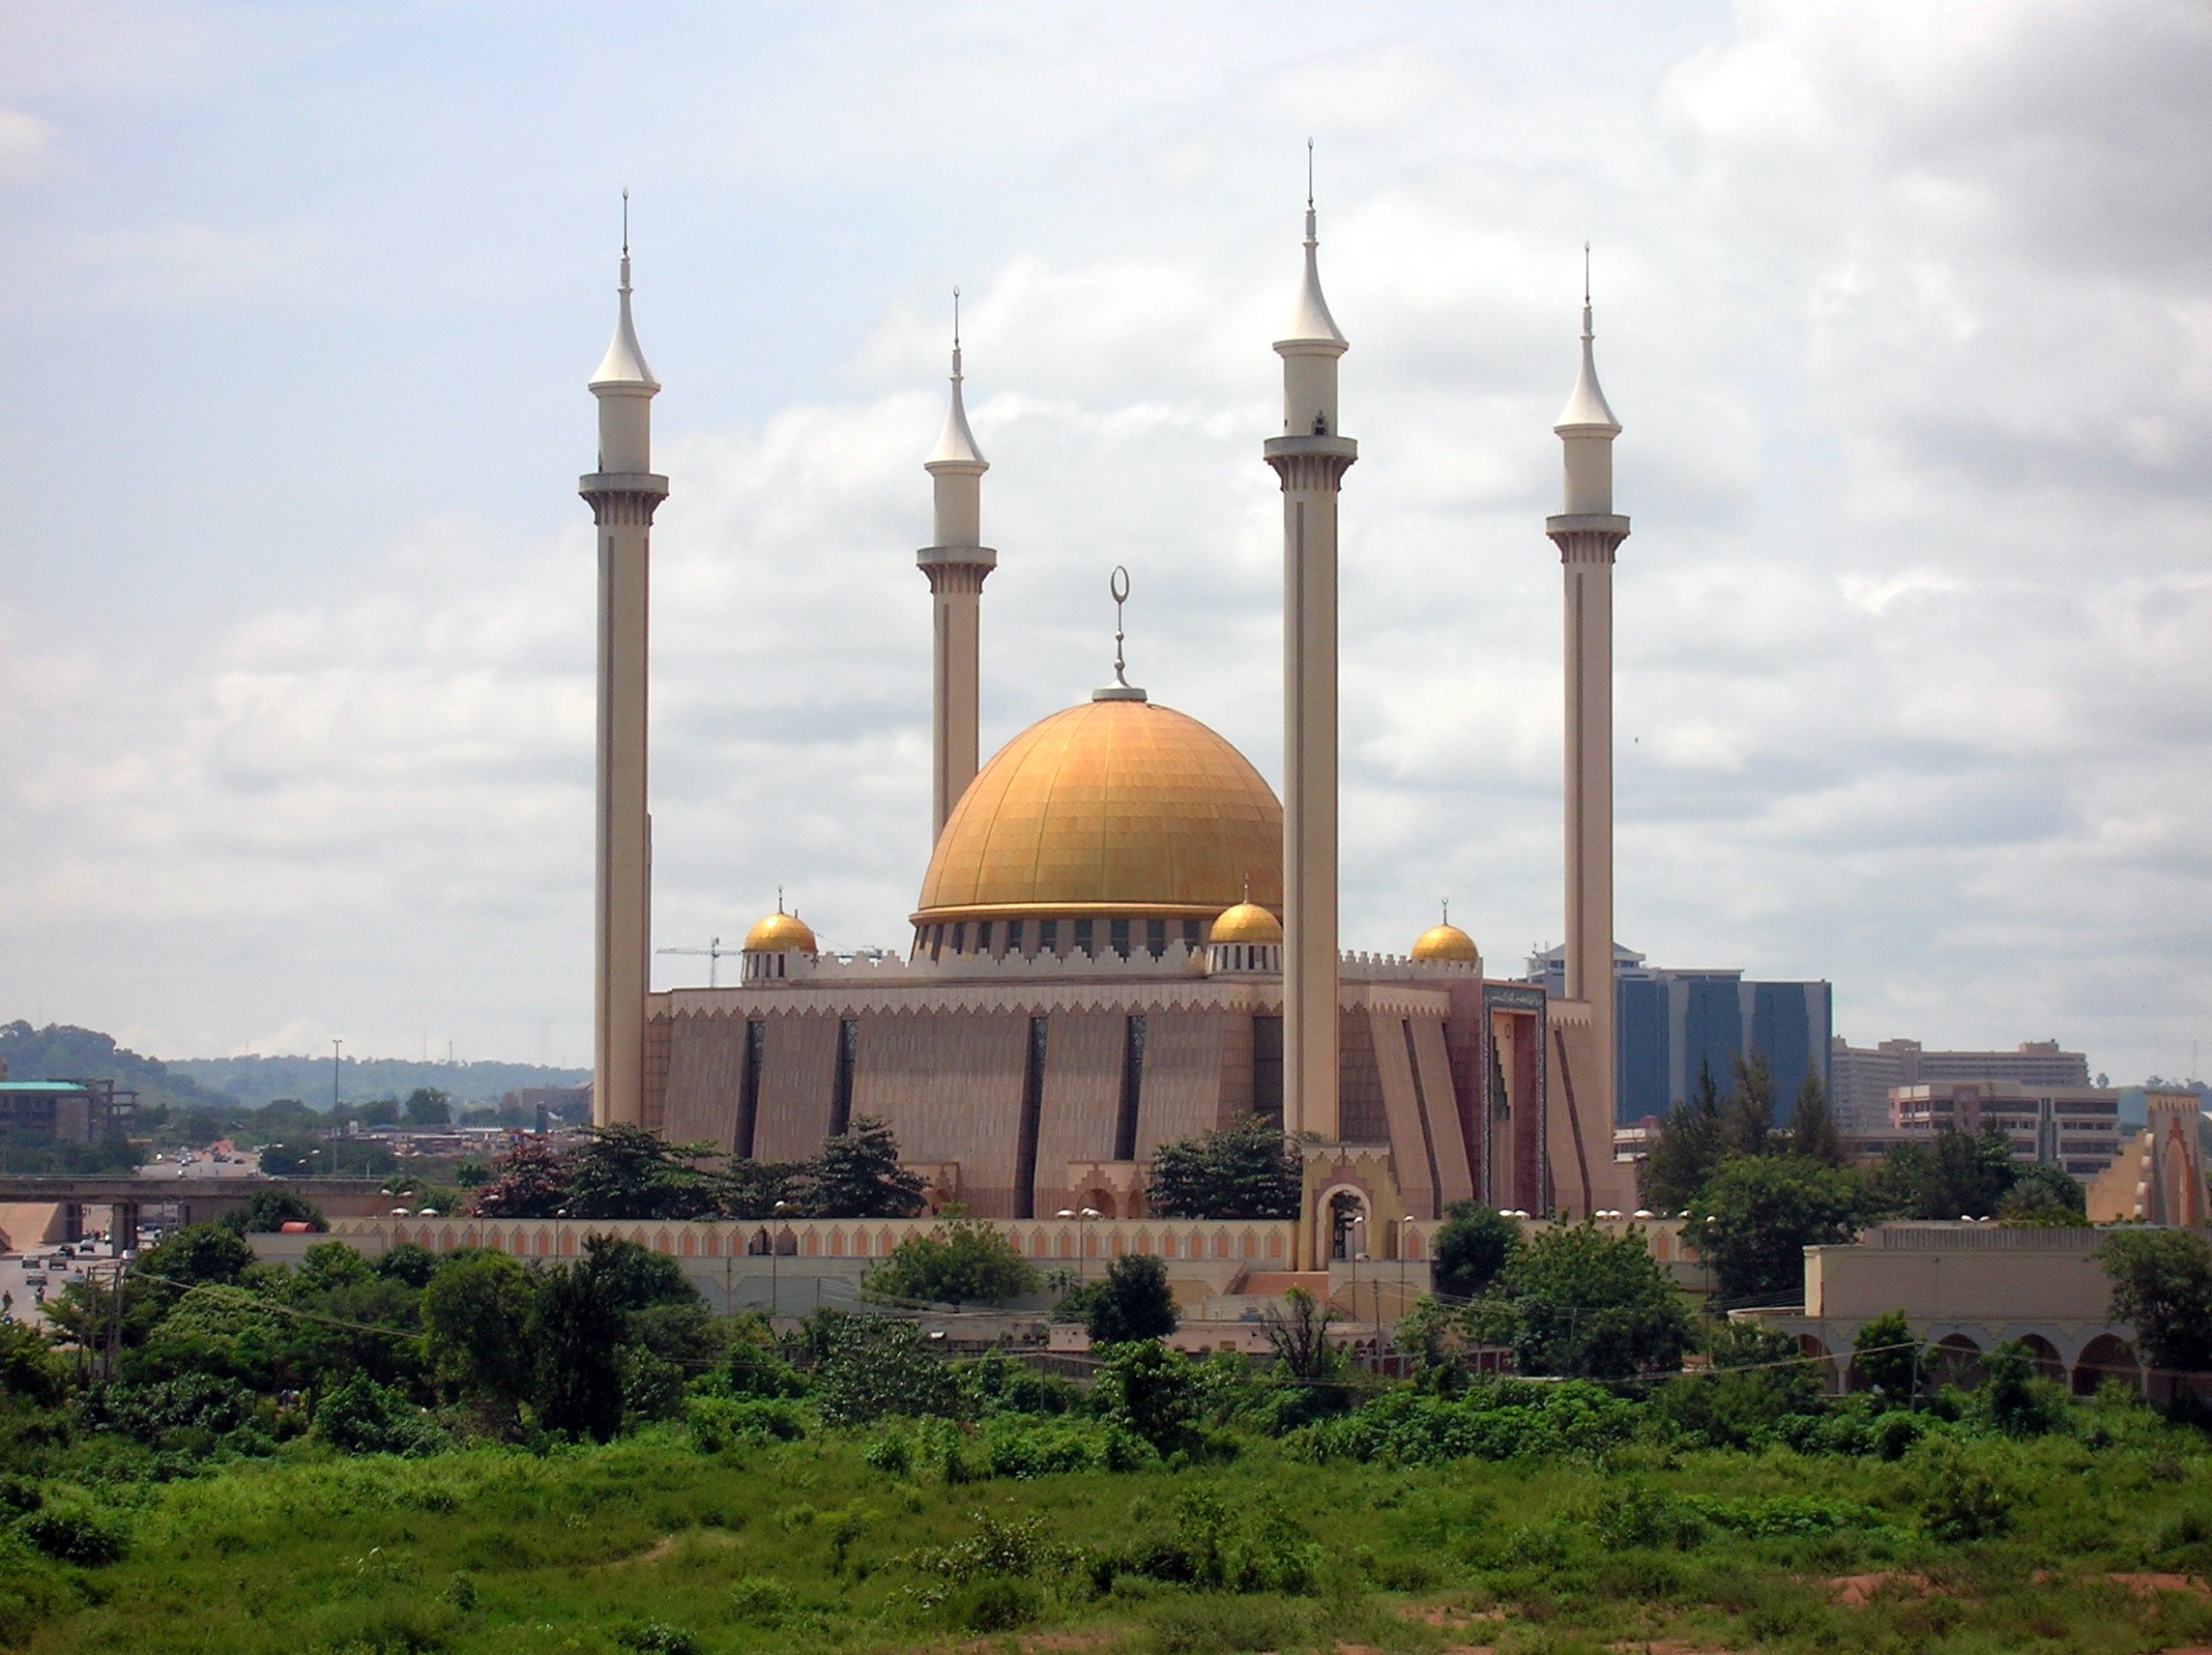 Популярные заставки и фоны Мечети на компьютер